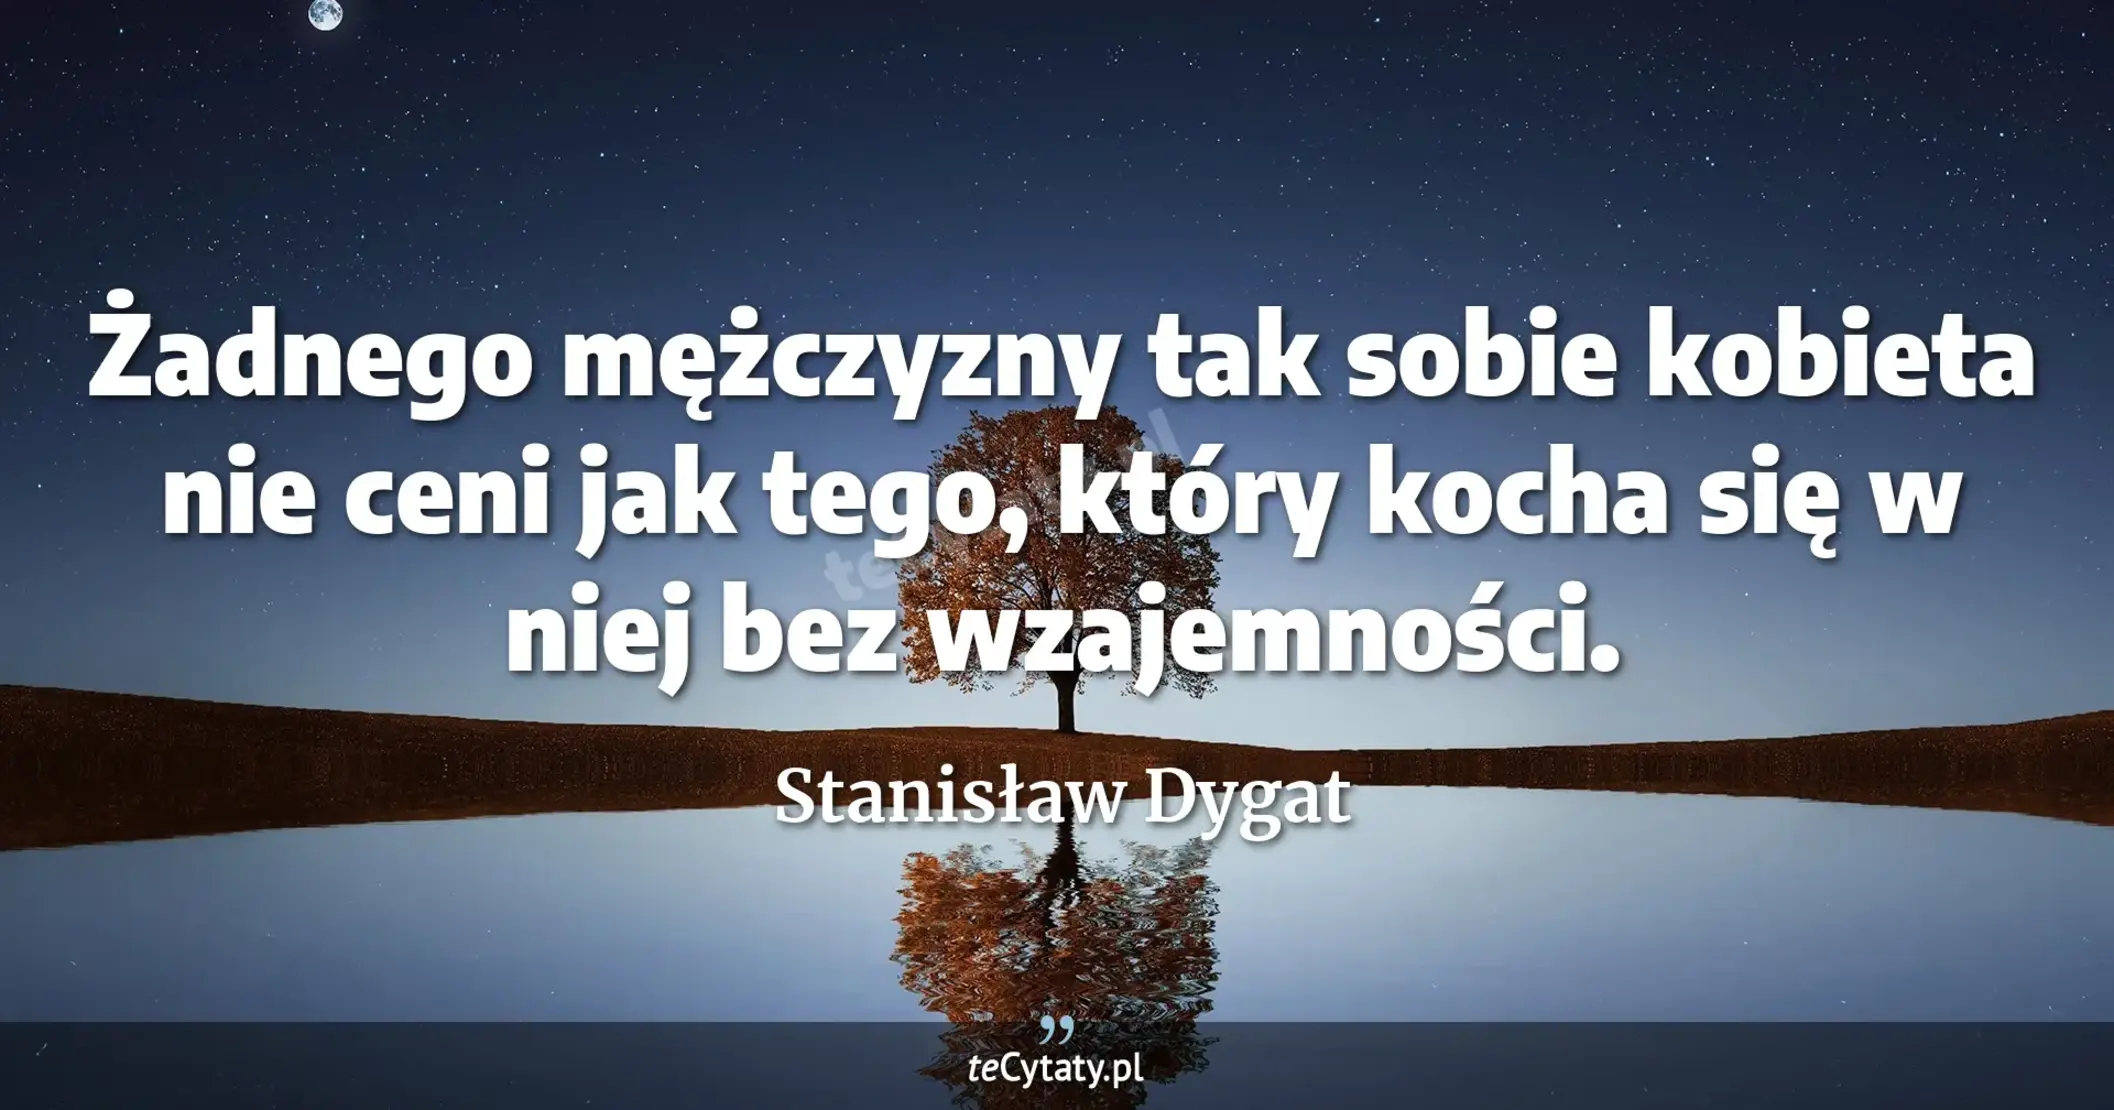 Żadnego mężczyzny tak sobie kobieta nie ceni jak tego, który kocha się w niej bez wzajemności. - Stanisław Dygat